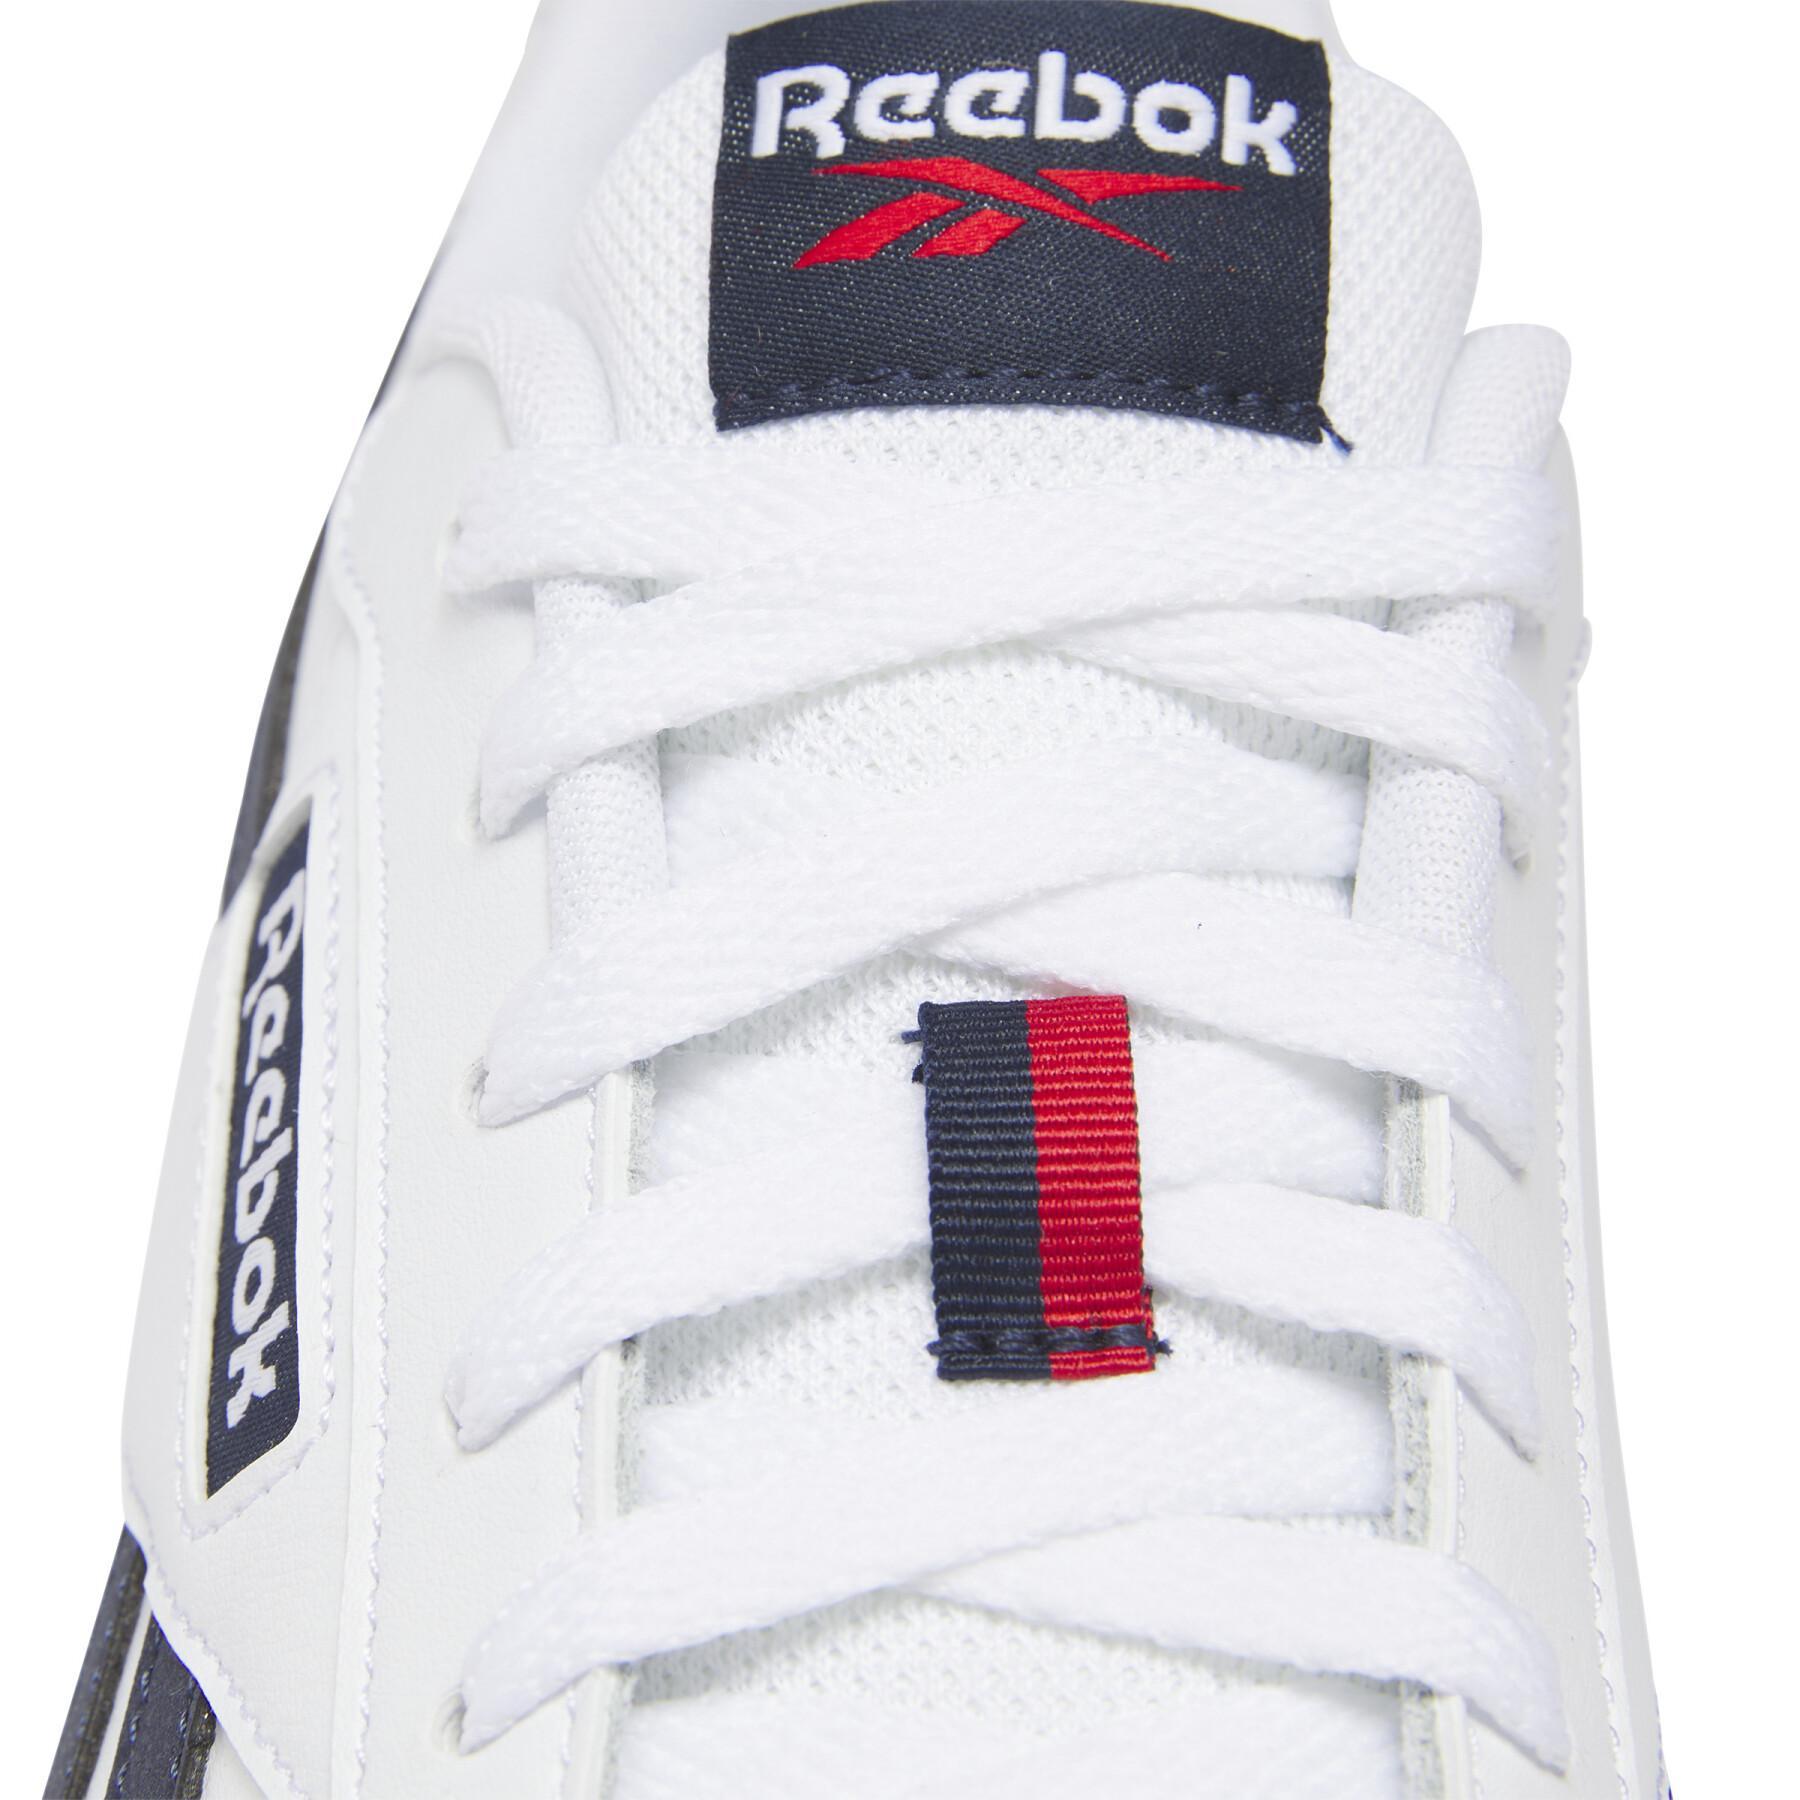 Sneakers Reebok Glide